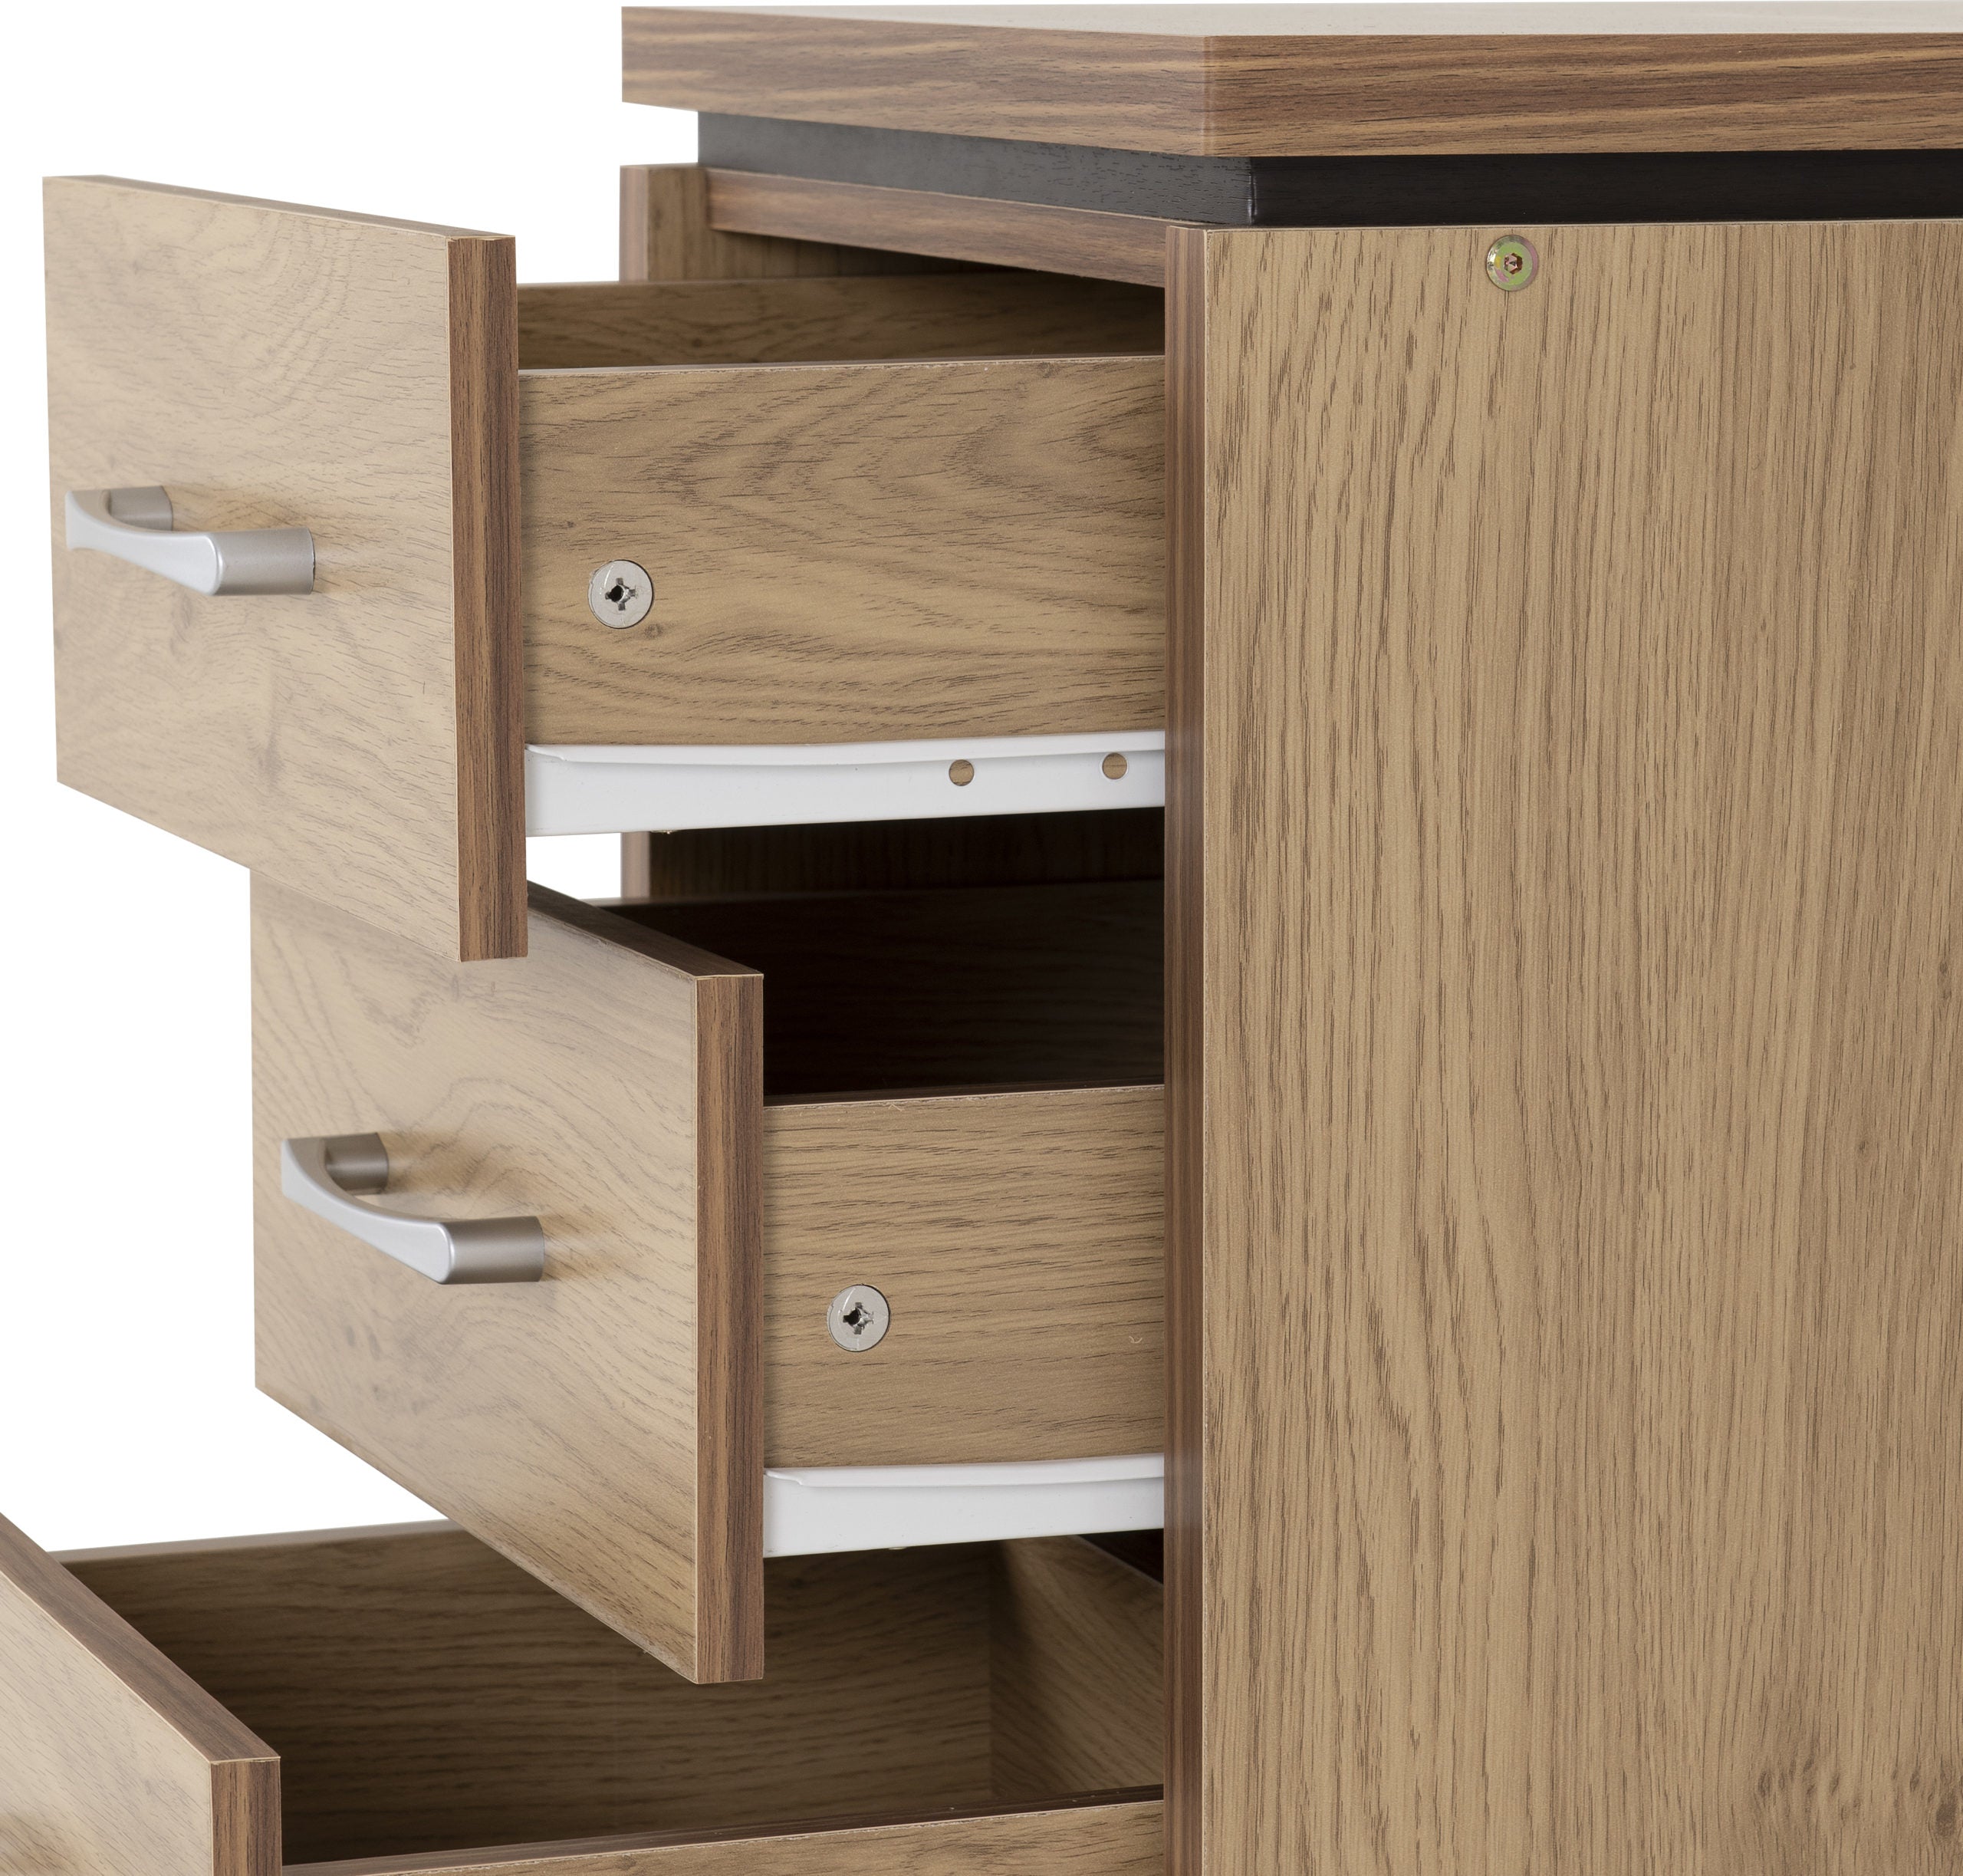 3 drawer bedside cabinets